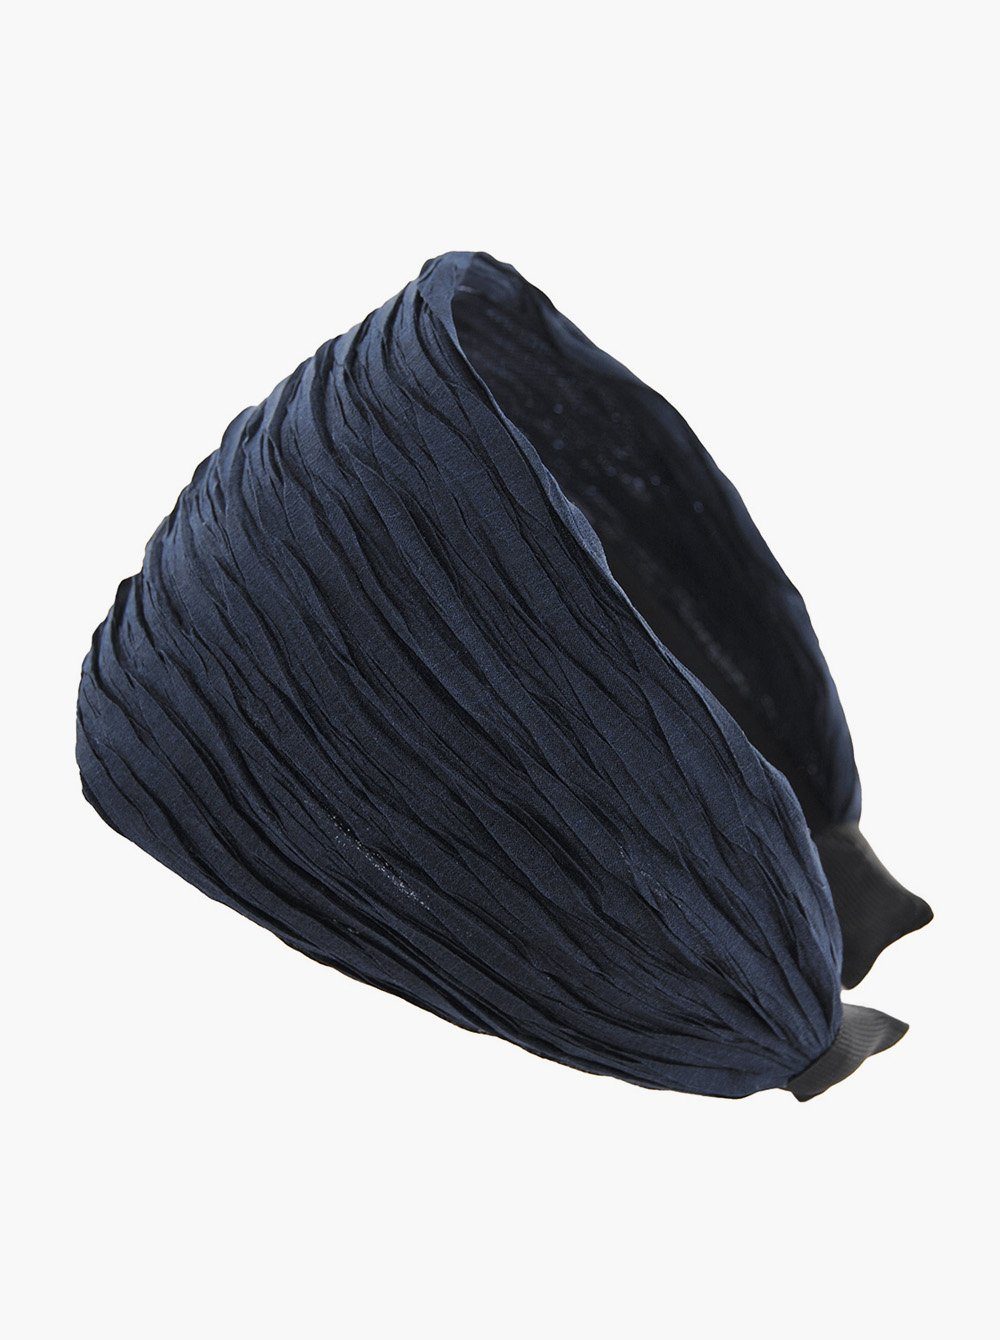 axy Haarreif Breiter Haarreif in Tuchoptik Wunderschön, Damen Breiter Haarreif (Plissierter Stoff) Haarband Haarreifen Navyblau